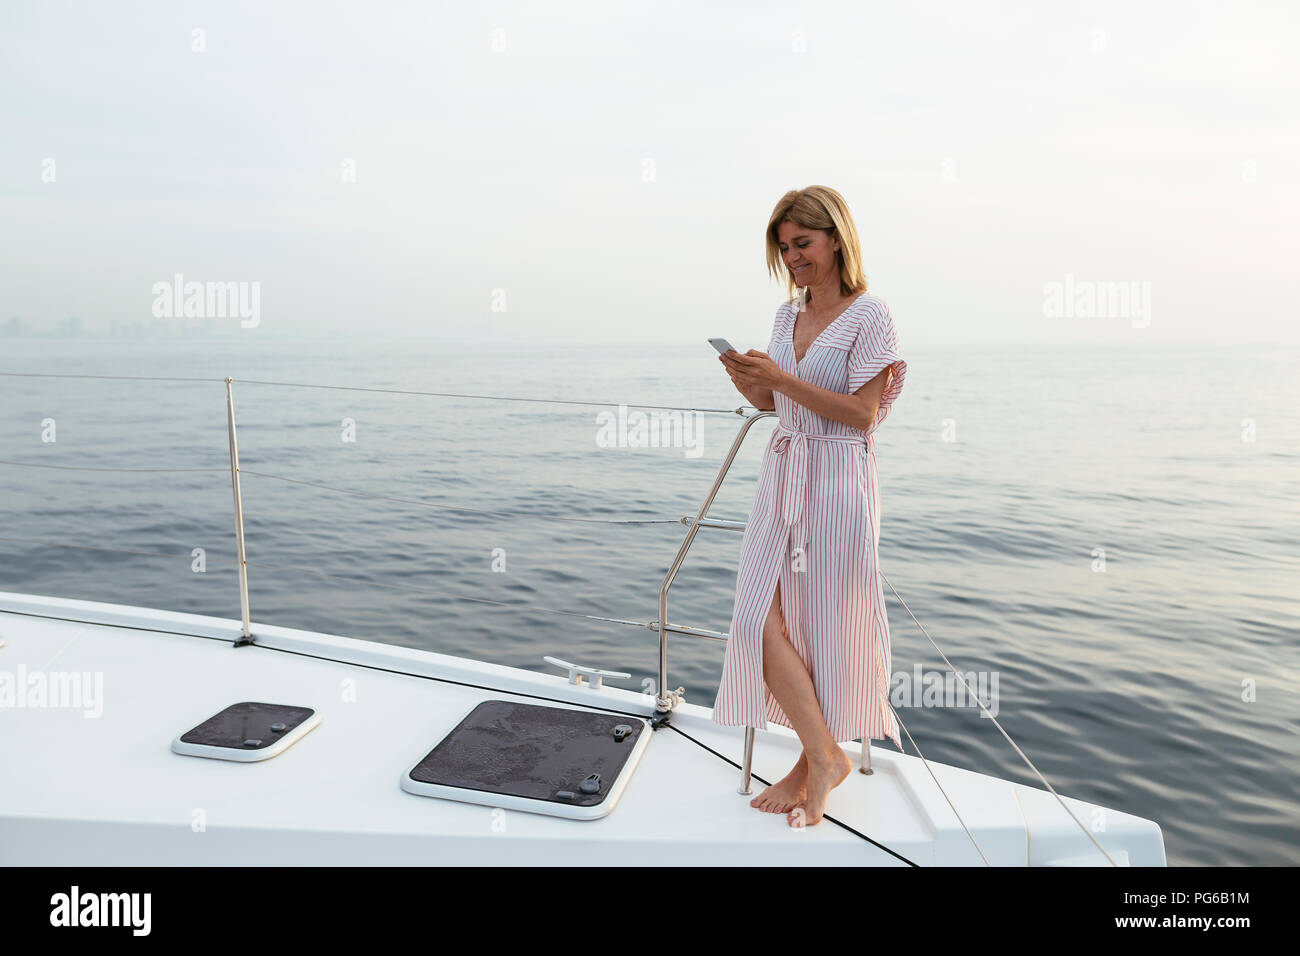 Mature woman standing on catamaran, using smartphone Stock Photo